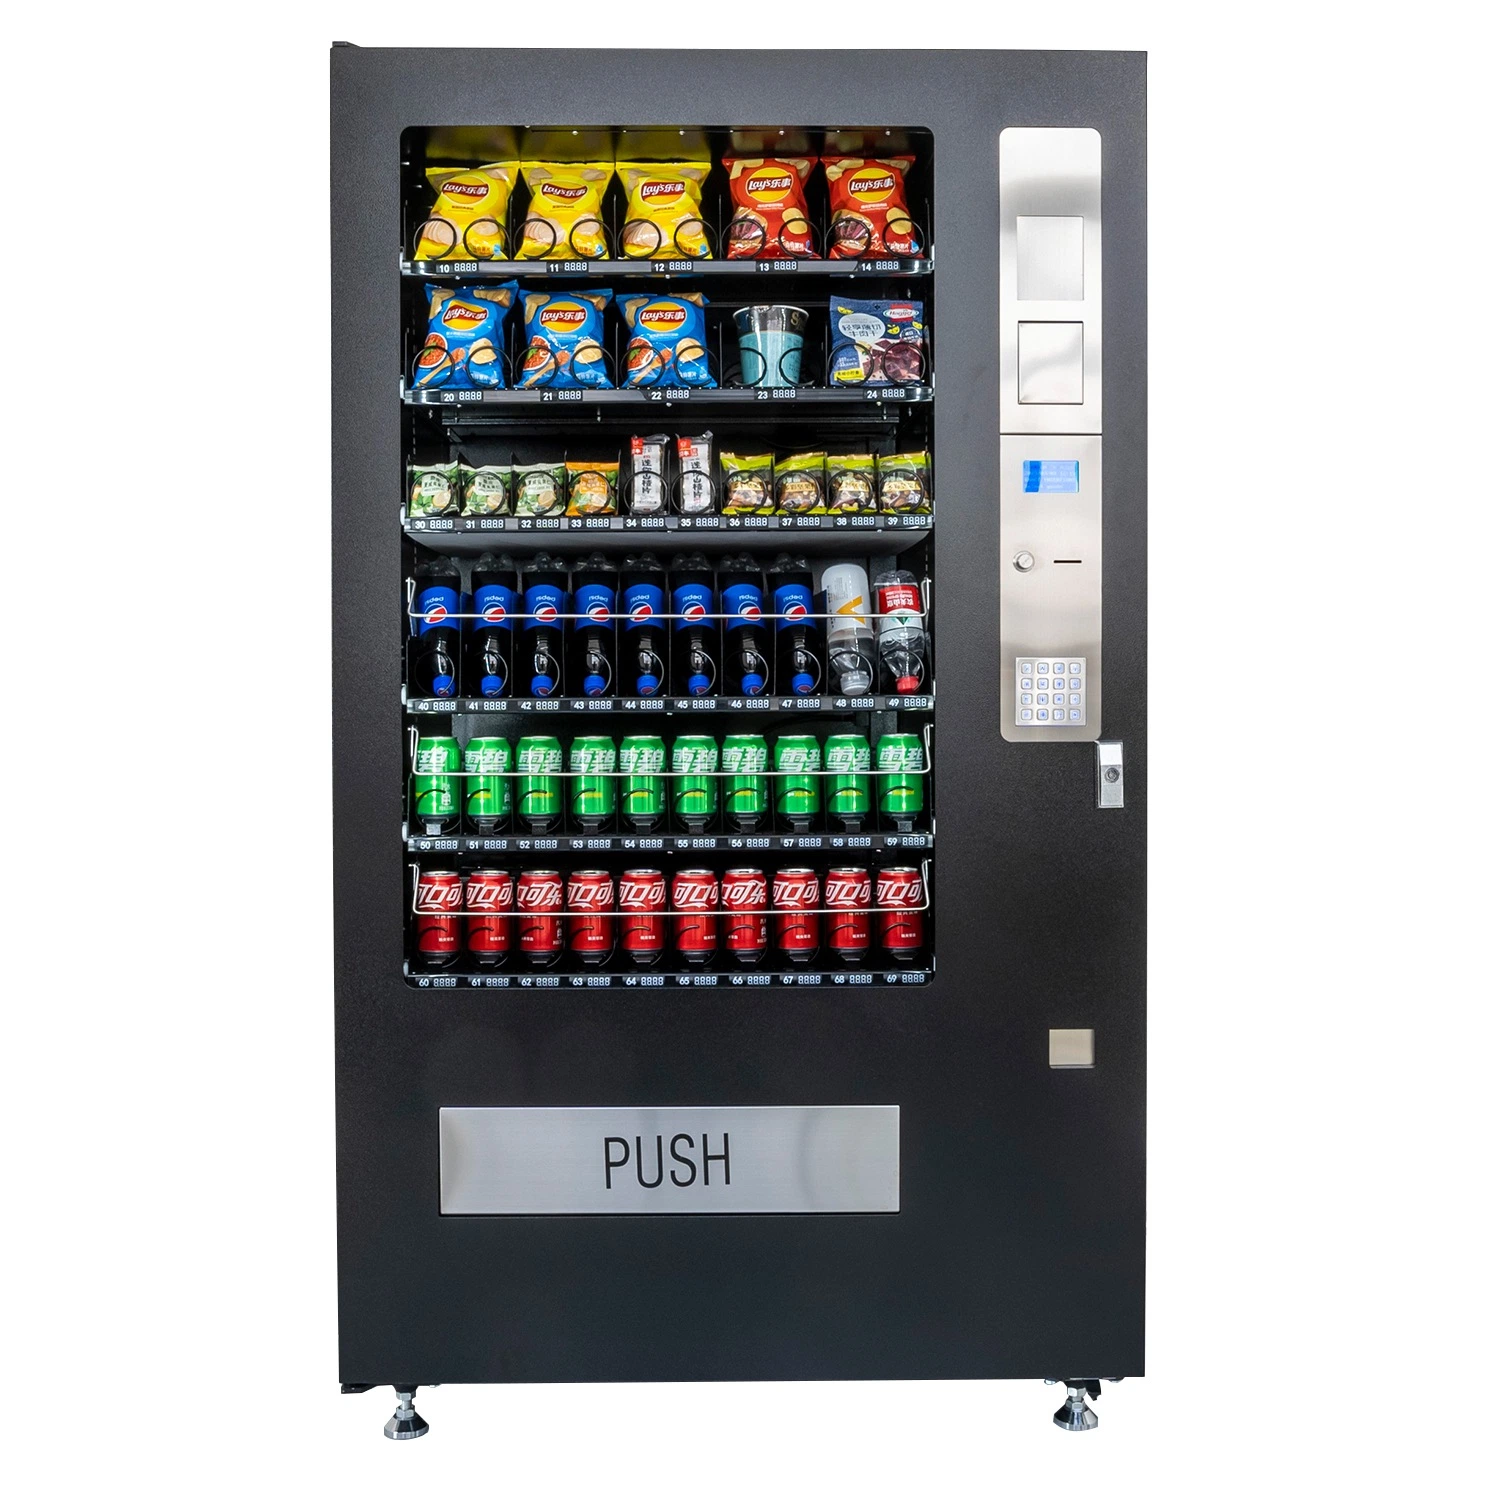 Snackautomat und Getränke Verkaufsautomat mit 50 Auswahlmöglichkeiten